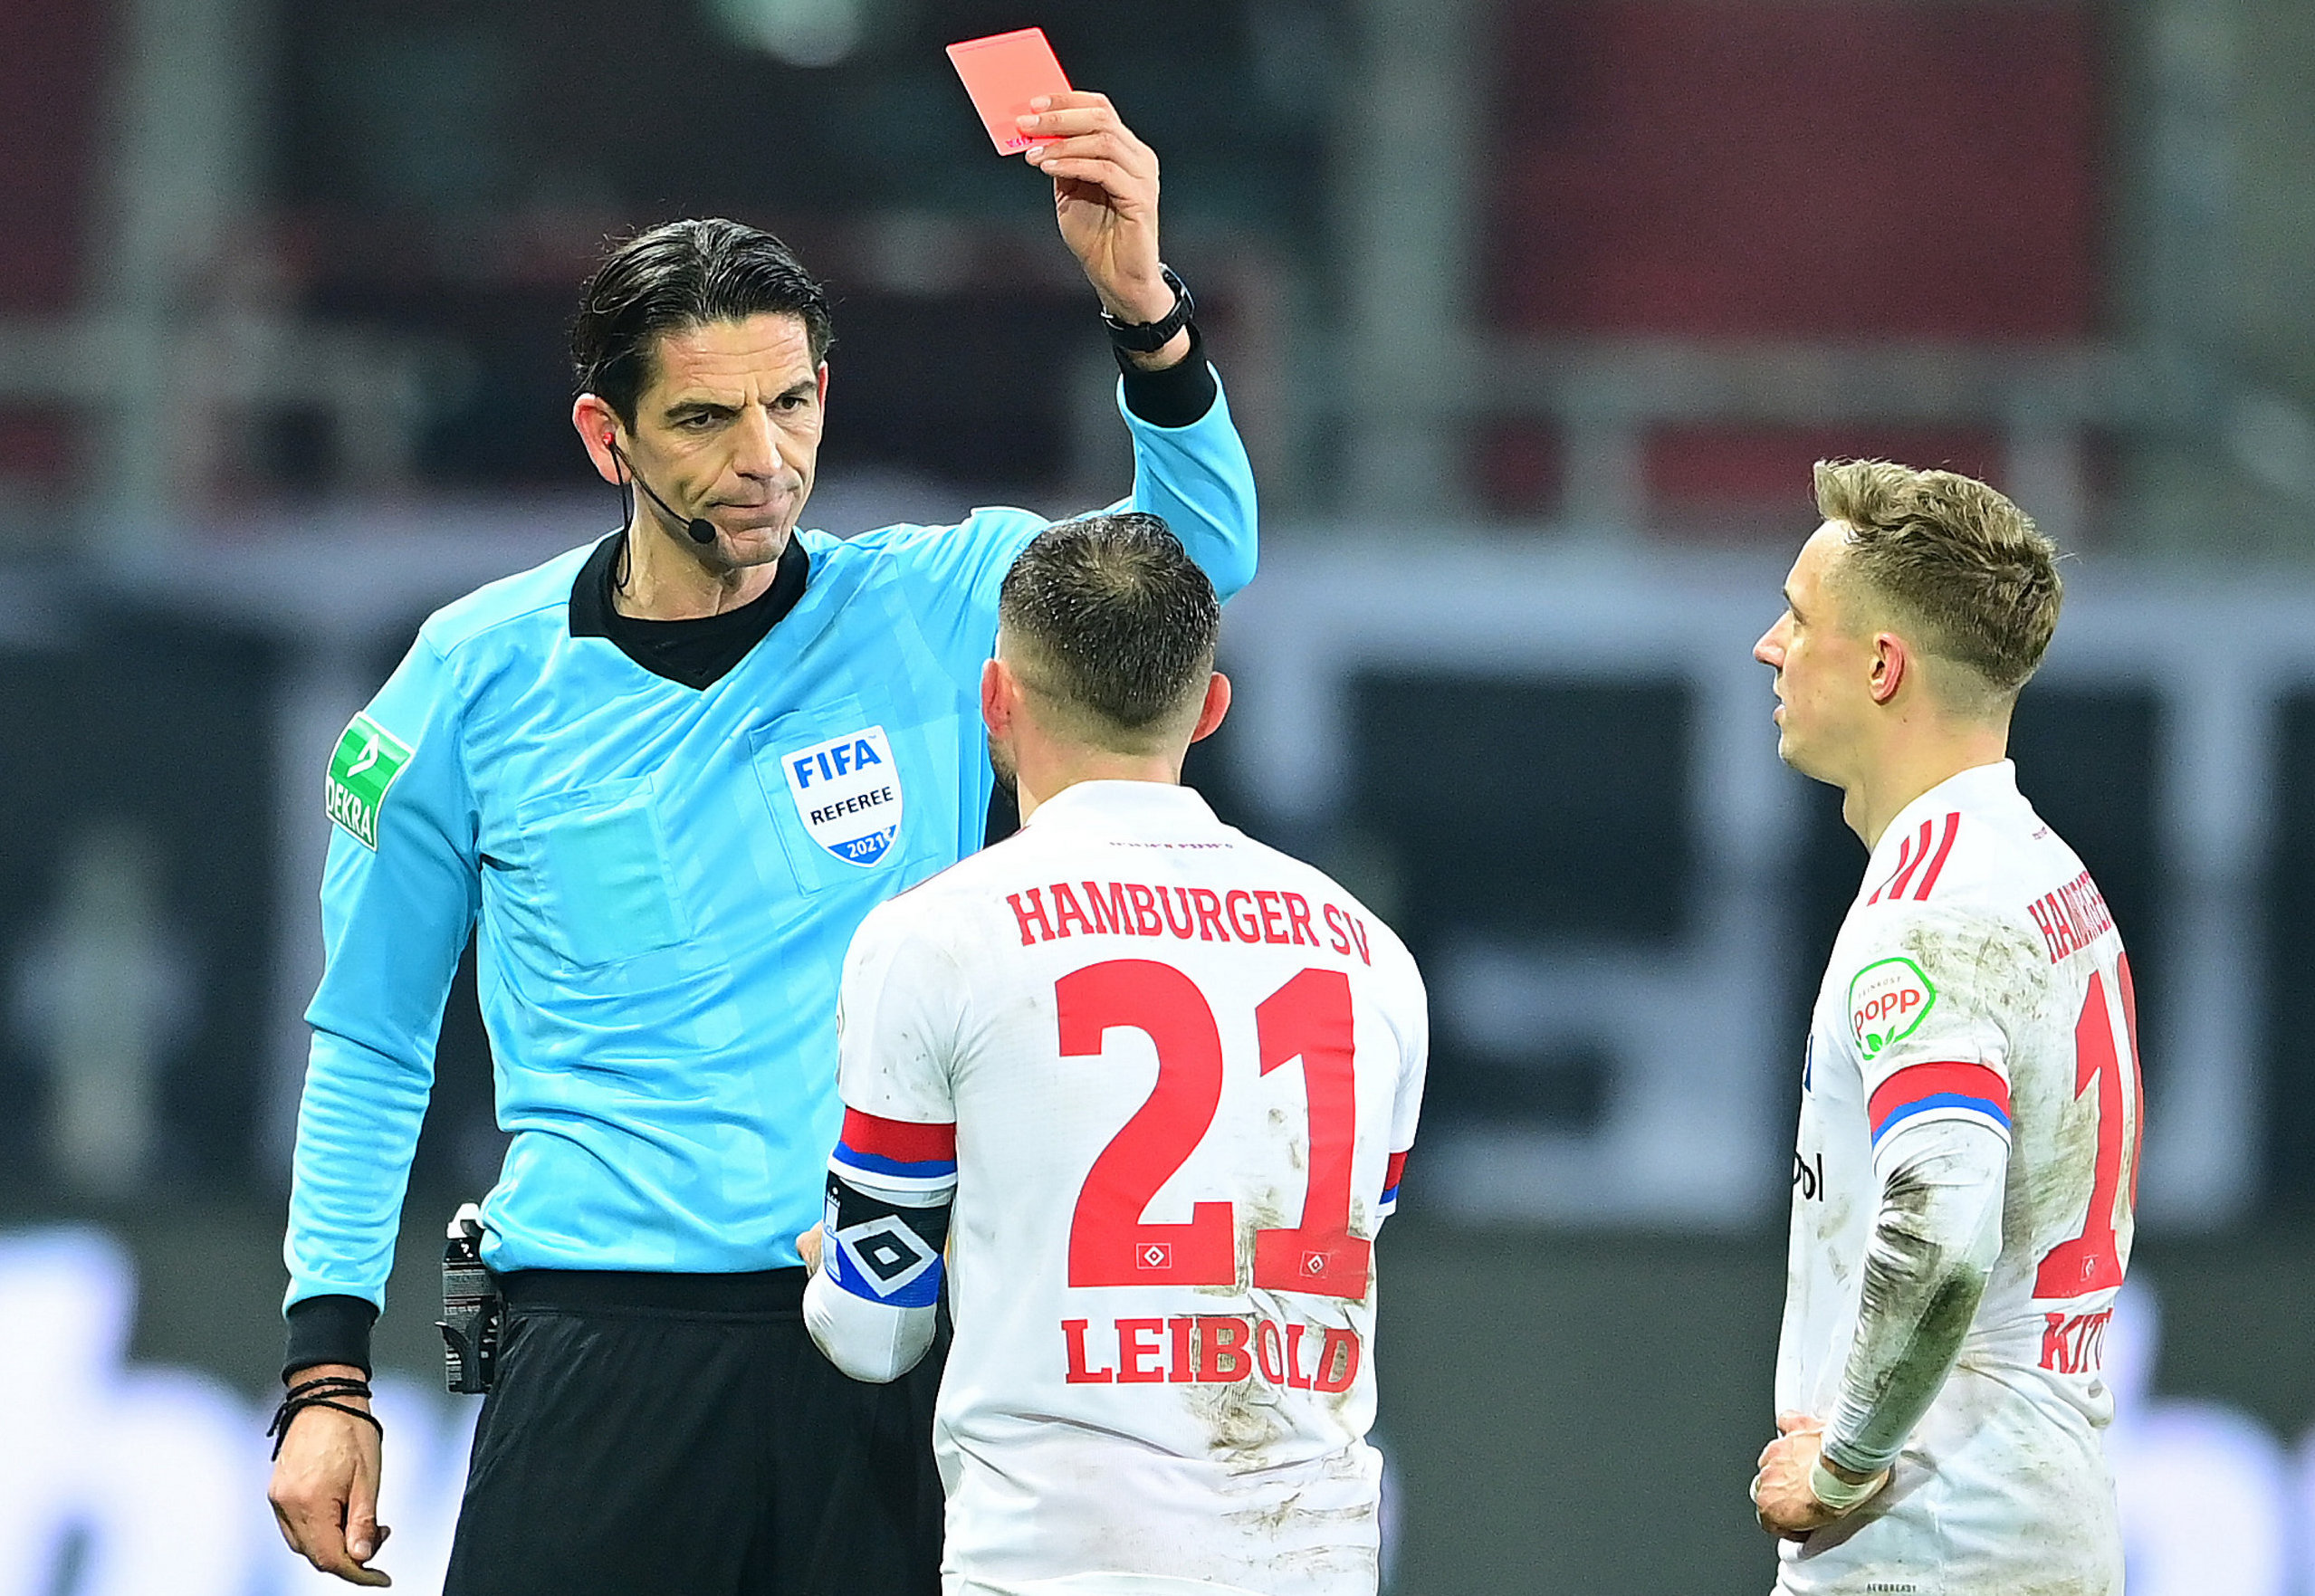 Beim Derby im März 2021 zeigte Deniz Aytekin Tim Leibold die Rote Karte.